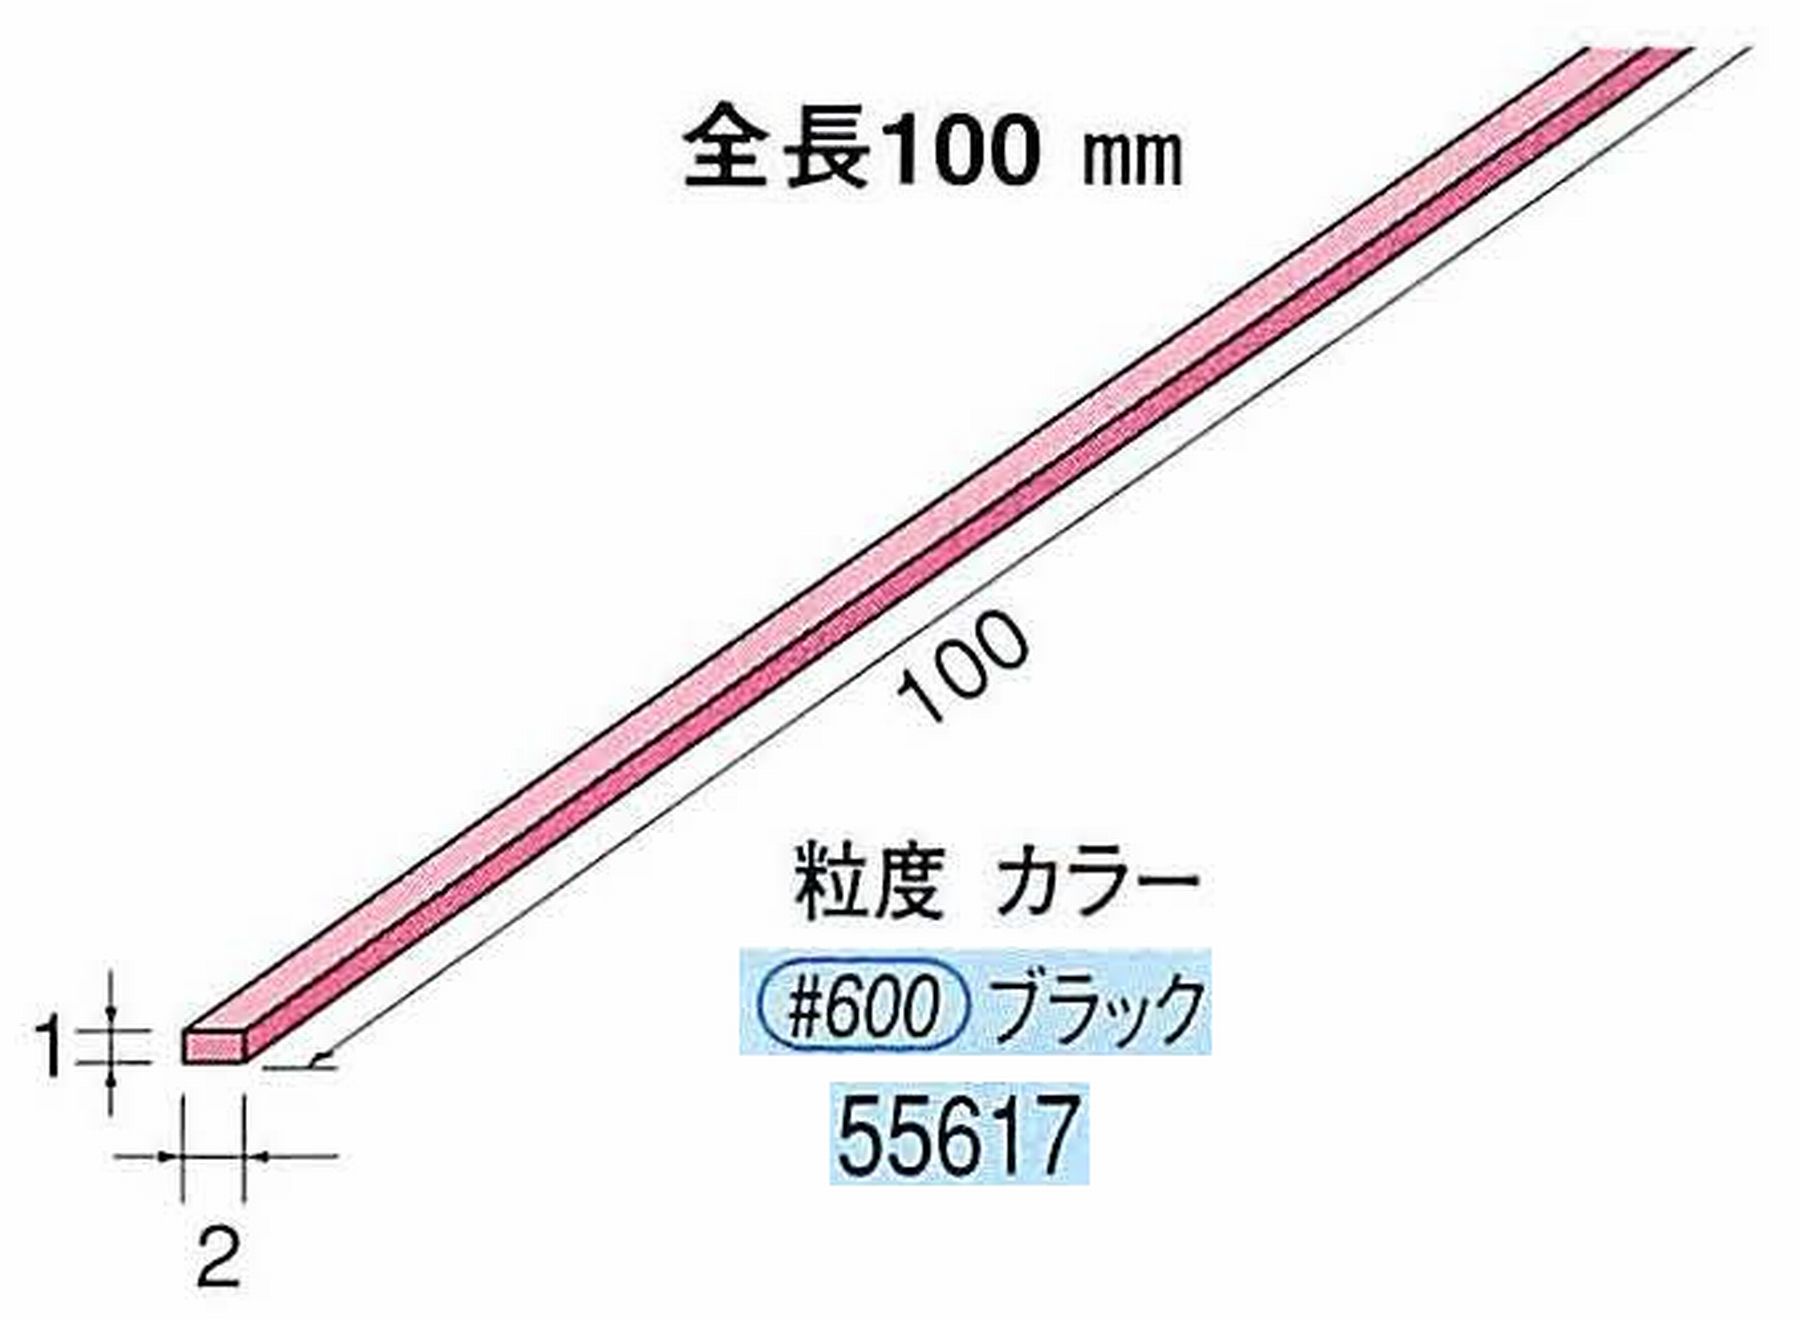 ナカニシ/NAKANISHI セラファイバー砥石 全長100mm ブラック 55617